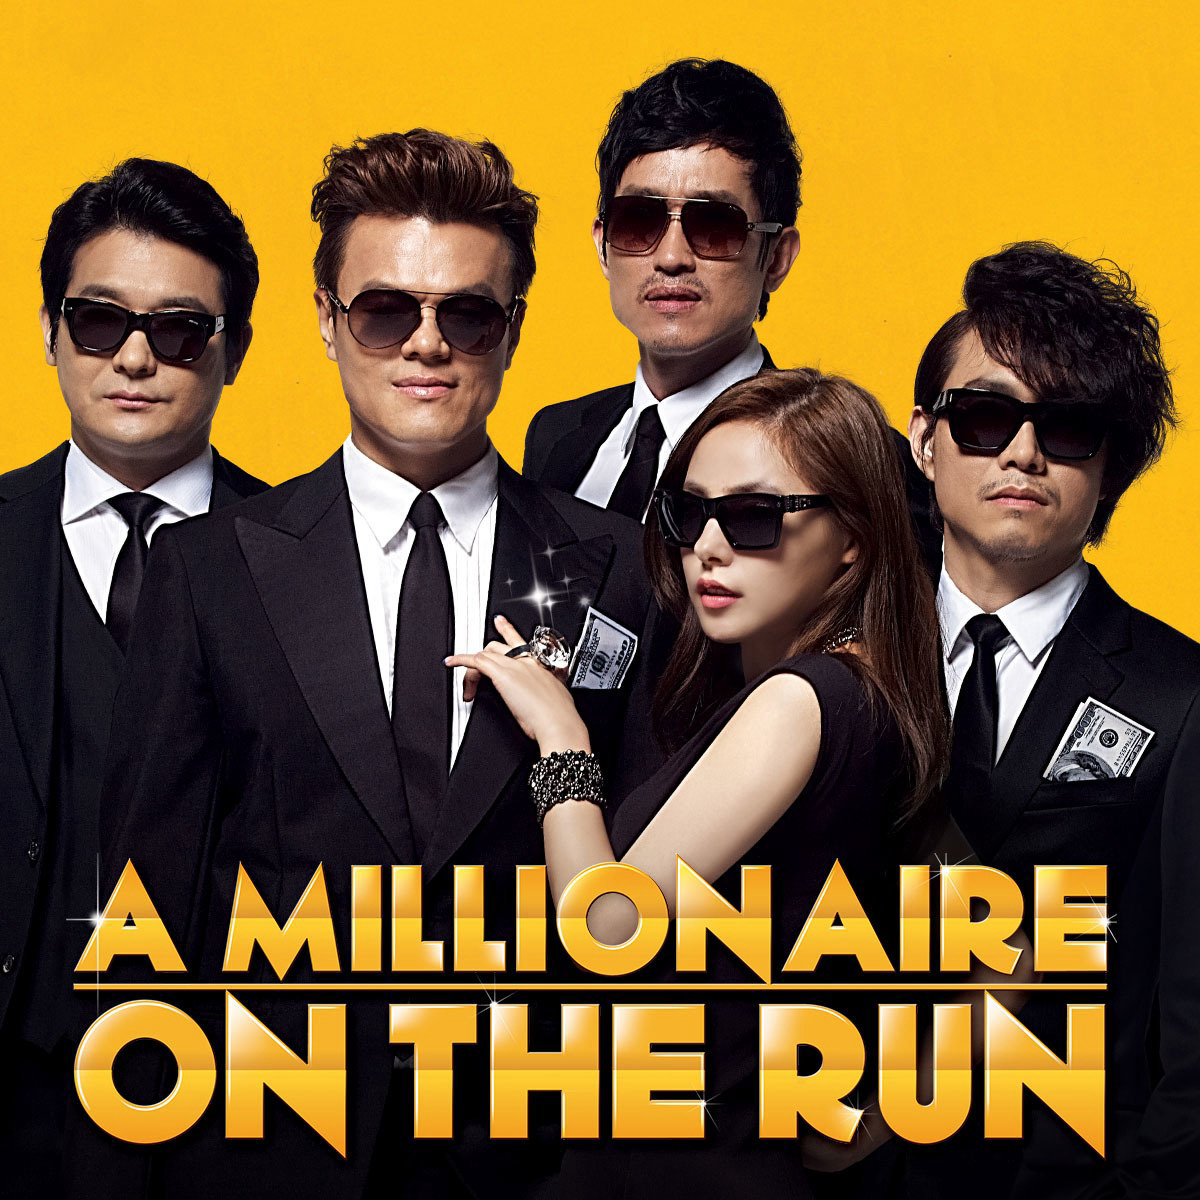 Xem Phim Ông Trùm Triệu Đô, A Millionaire on the Run 2013